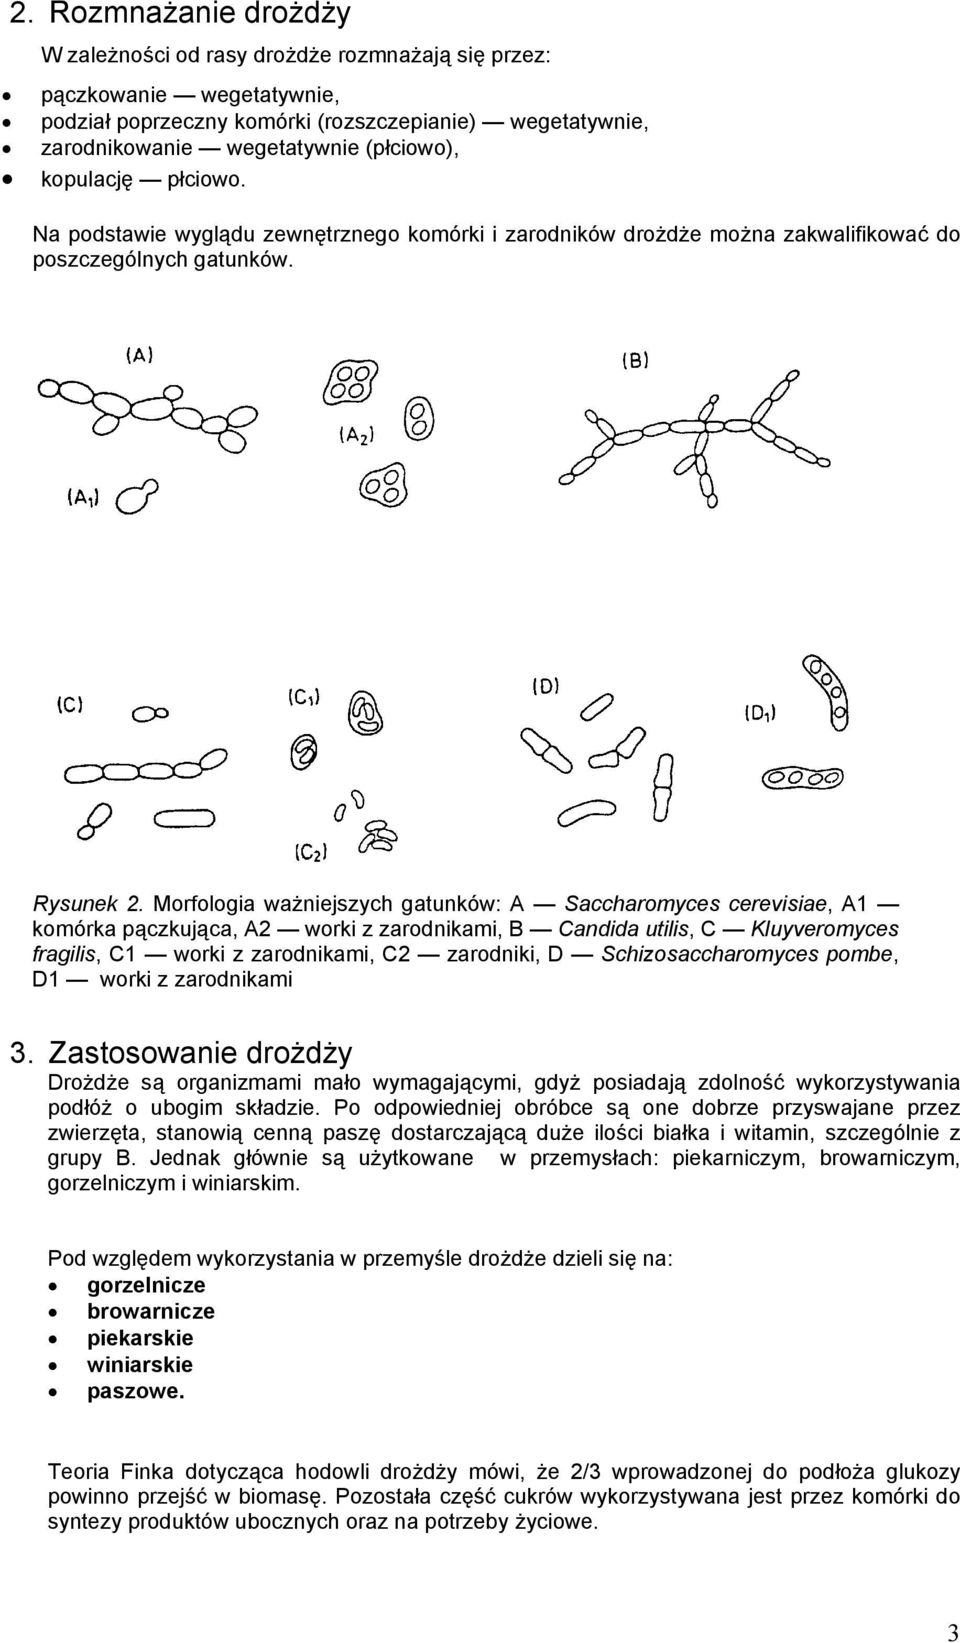 Morfologia ważniejszych gatunków: A Saccharomyces cerevisiae, A1 komórka pączkująca, A2 worki z zarodnikami, B Candida utilis, C Kluyveromyces fragilis, C1 worki z zarodnikami, C2 zarodniki, D